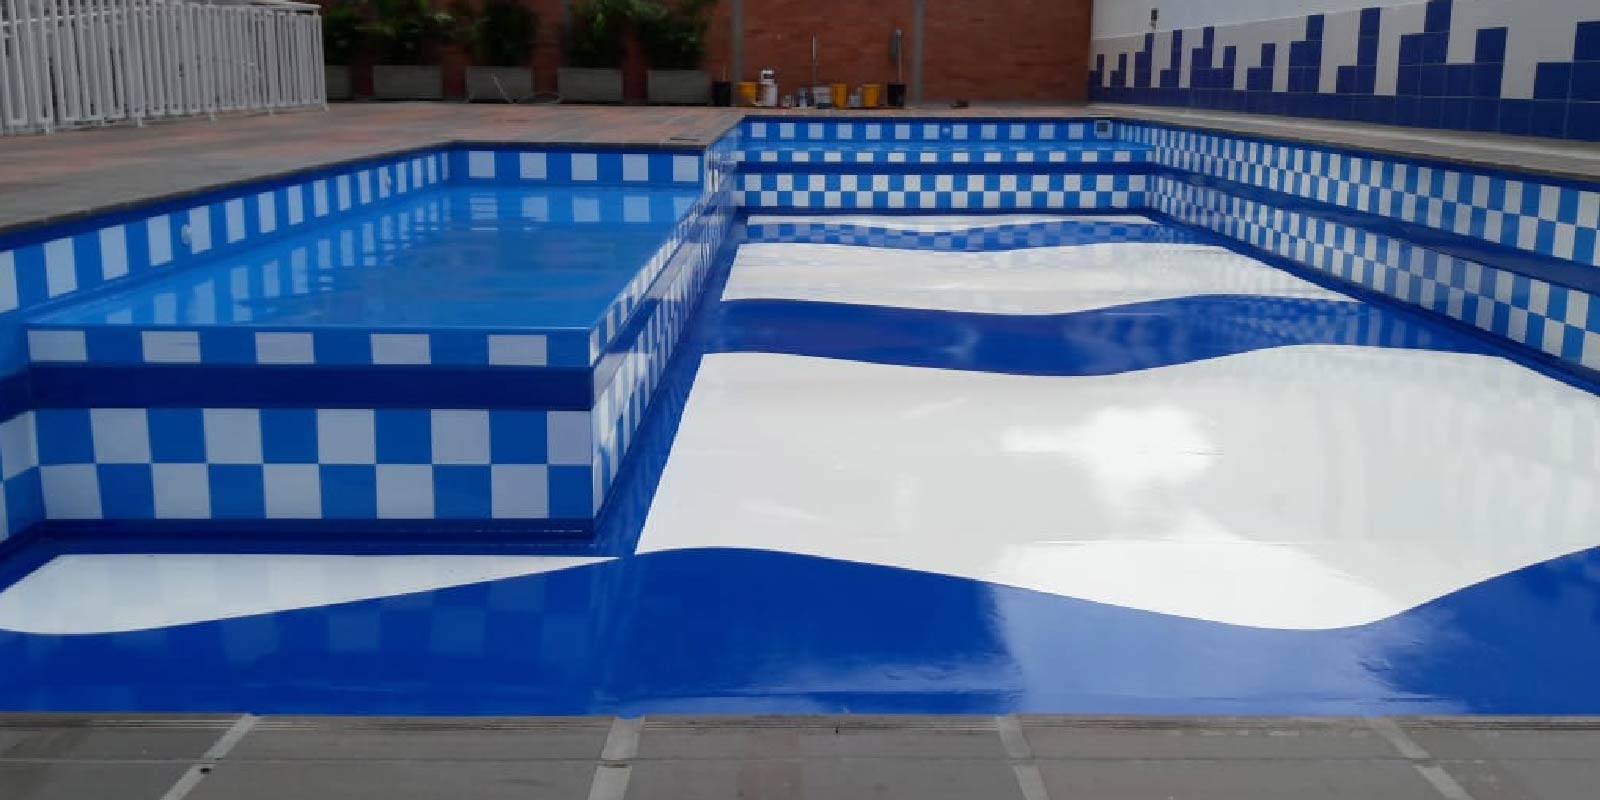 piscinas prefabricadas